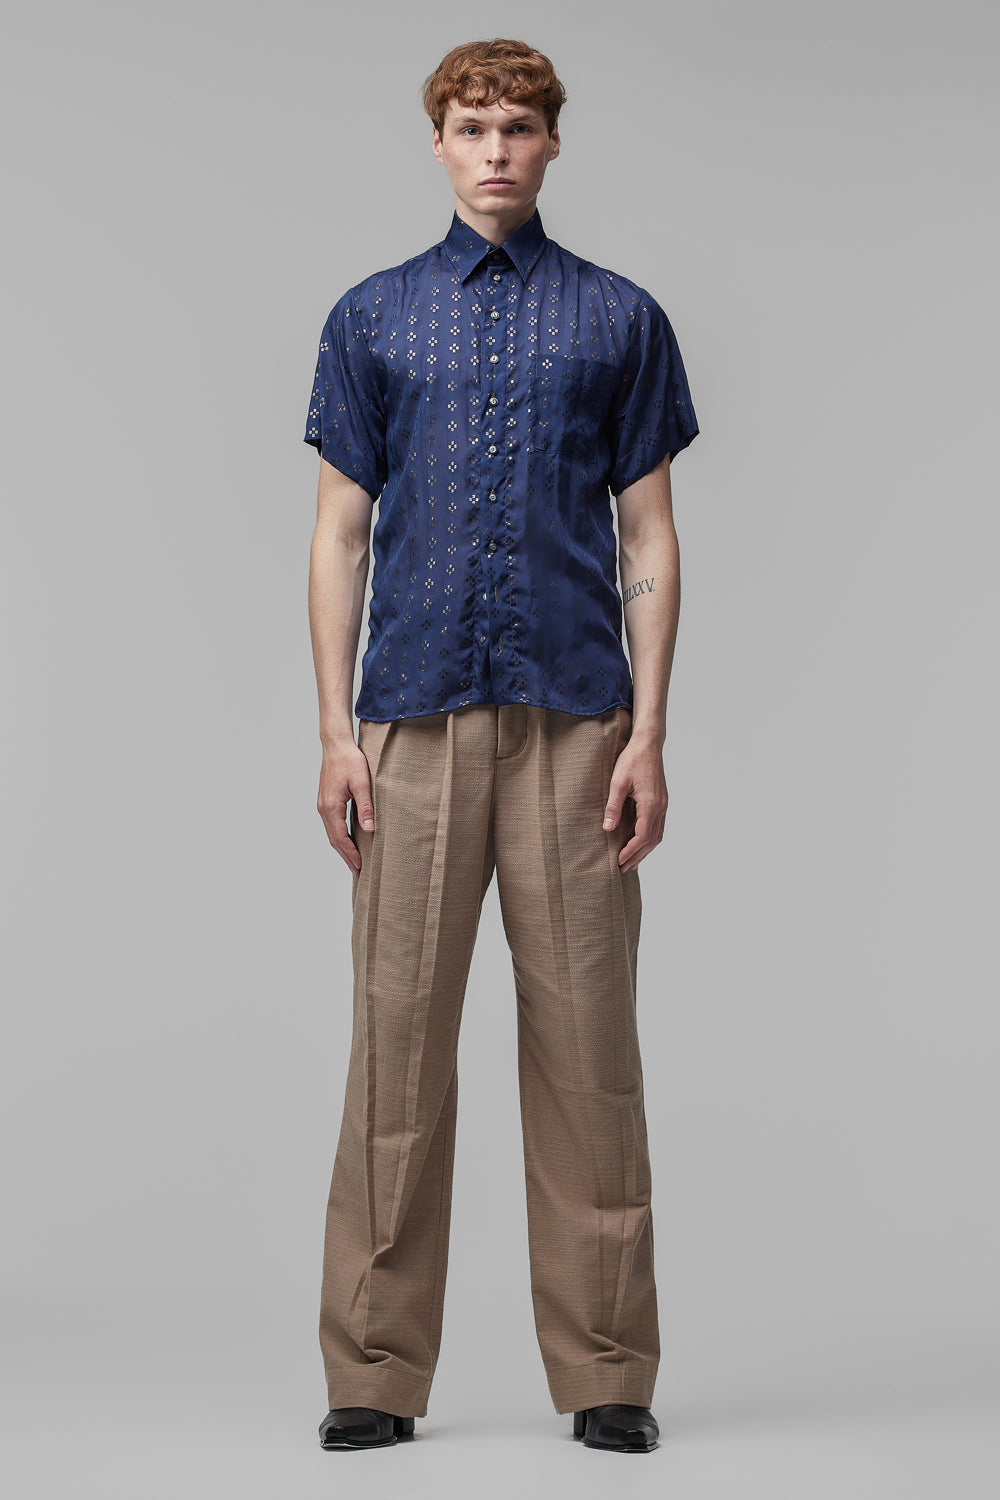 Camisa de Mangas Curtas em Musseline de Seda Azul-Marinho com Detalhes Geométricos em Metal Preto